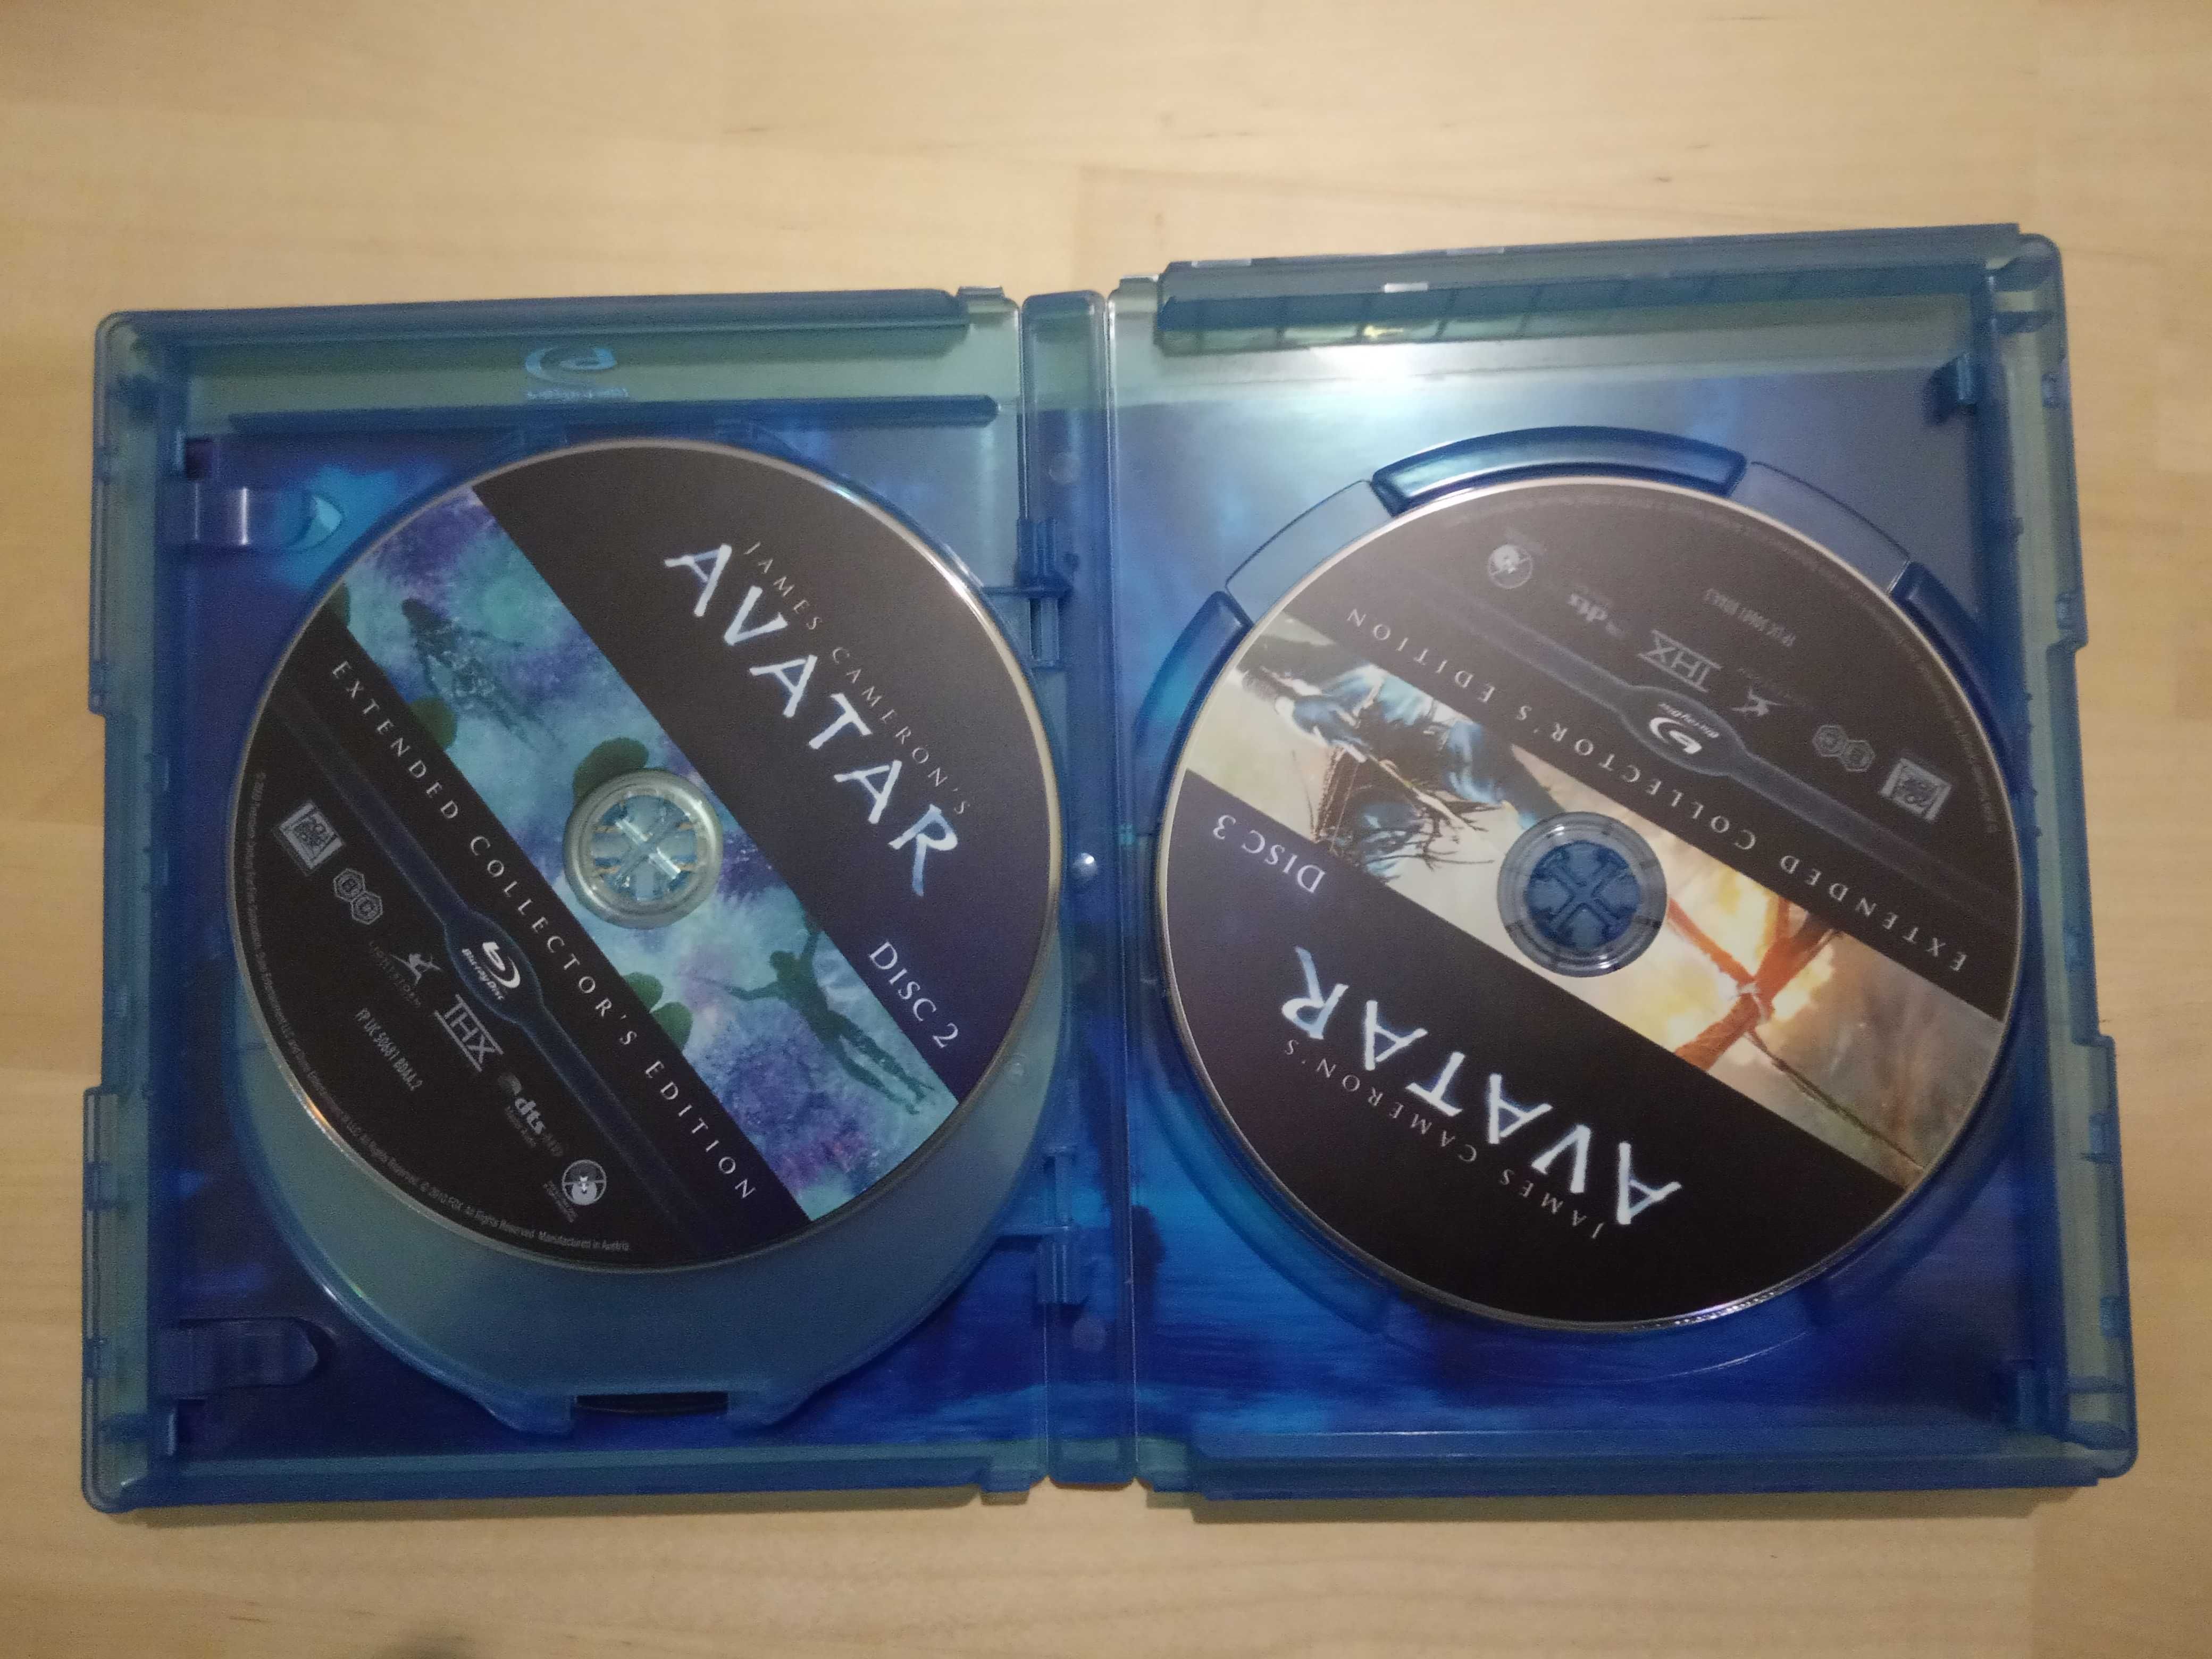 Blu-Ray Edição de Coleccionador Avatar